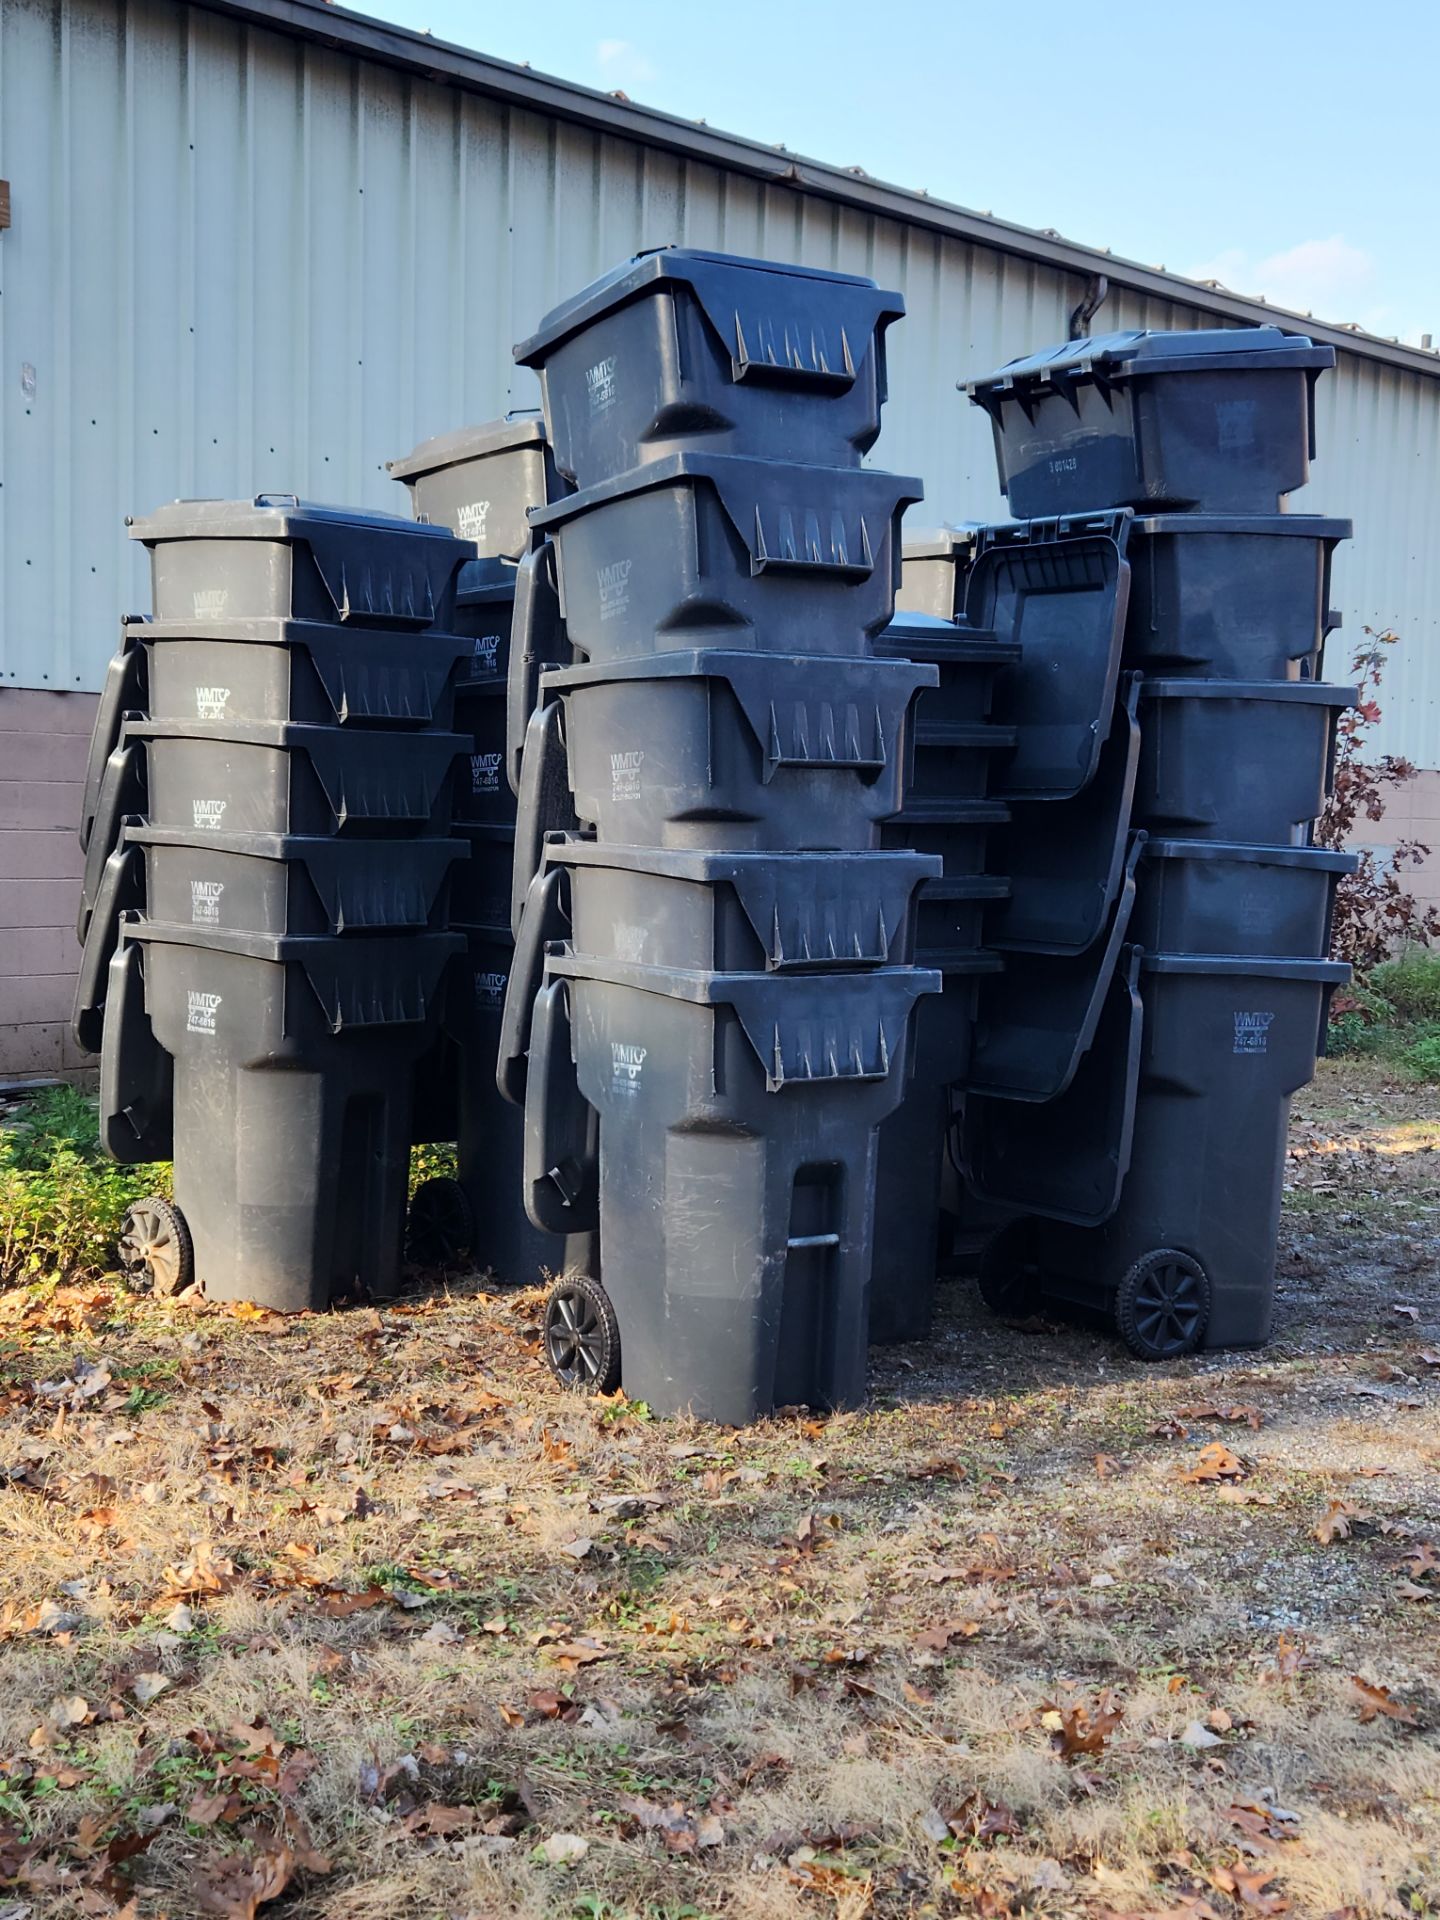 Dumpster Barrels